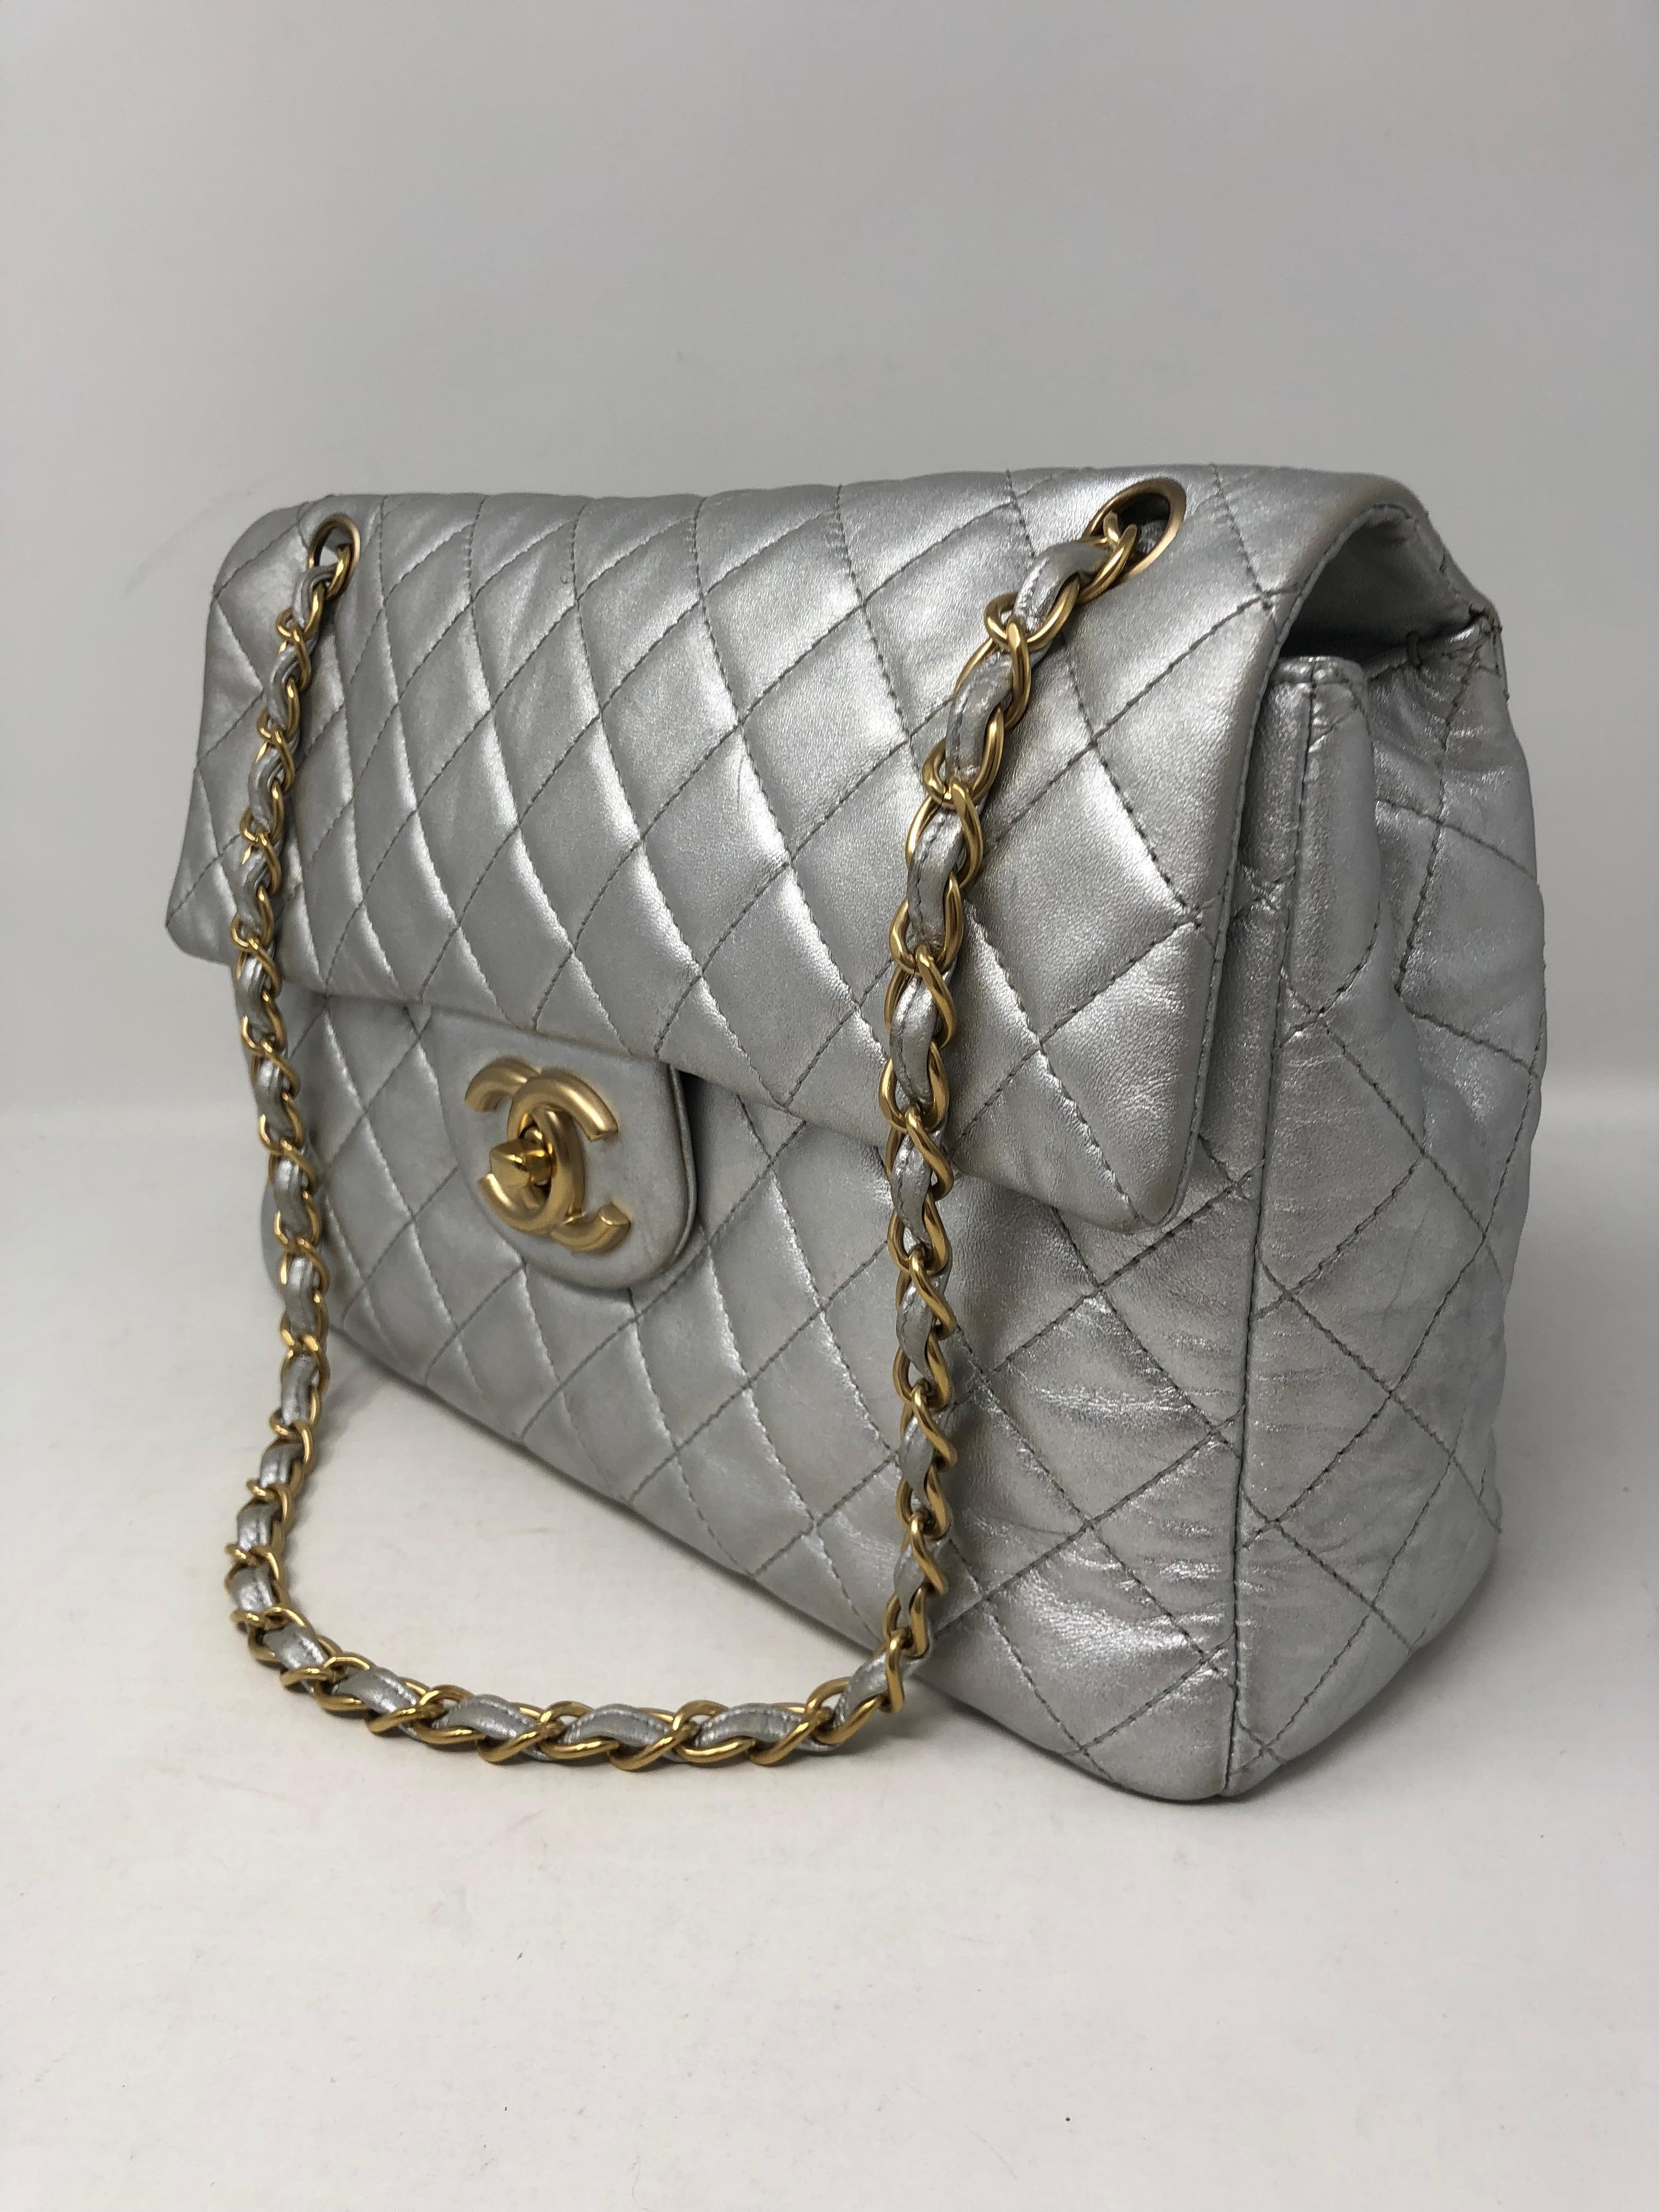 Chanel Silver Metallic Jumbo Bag 1